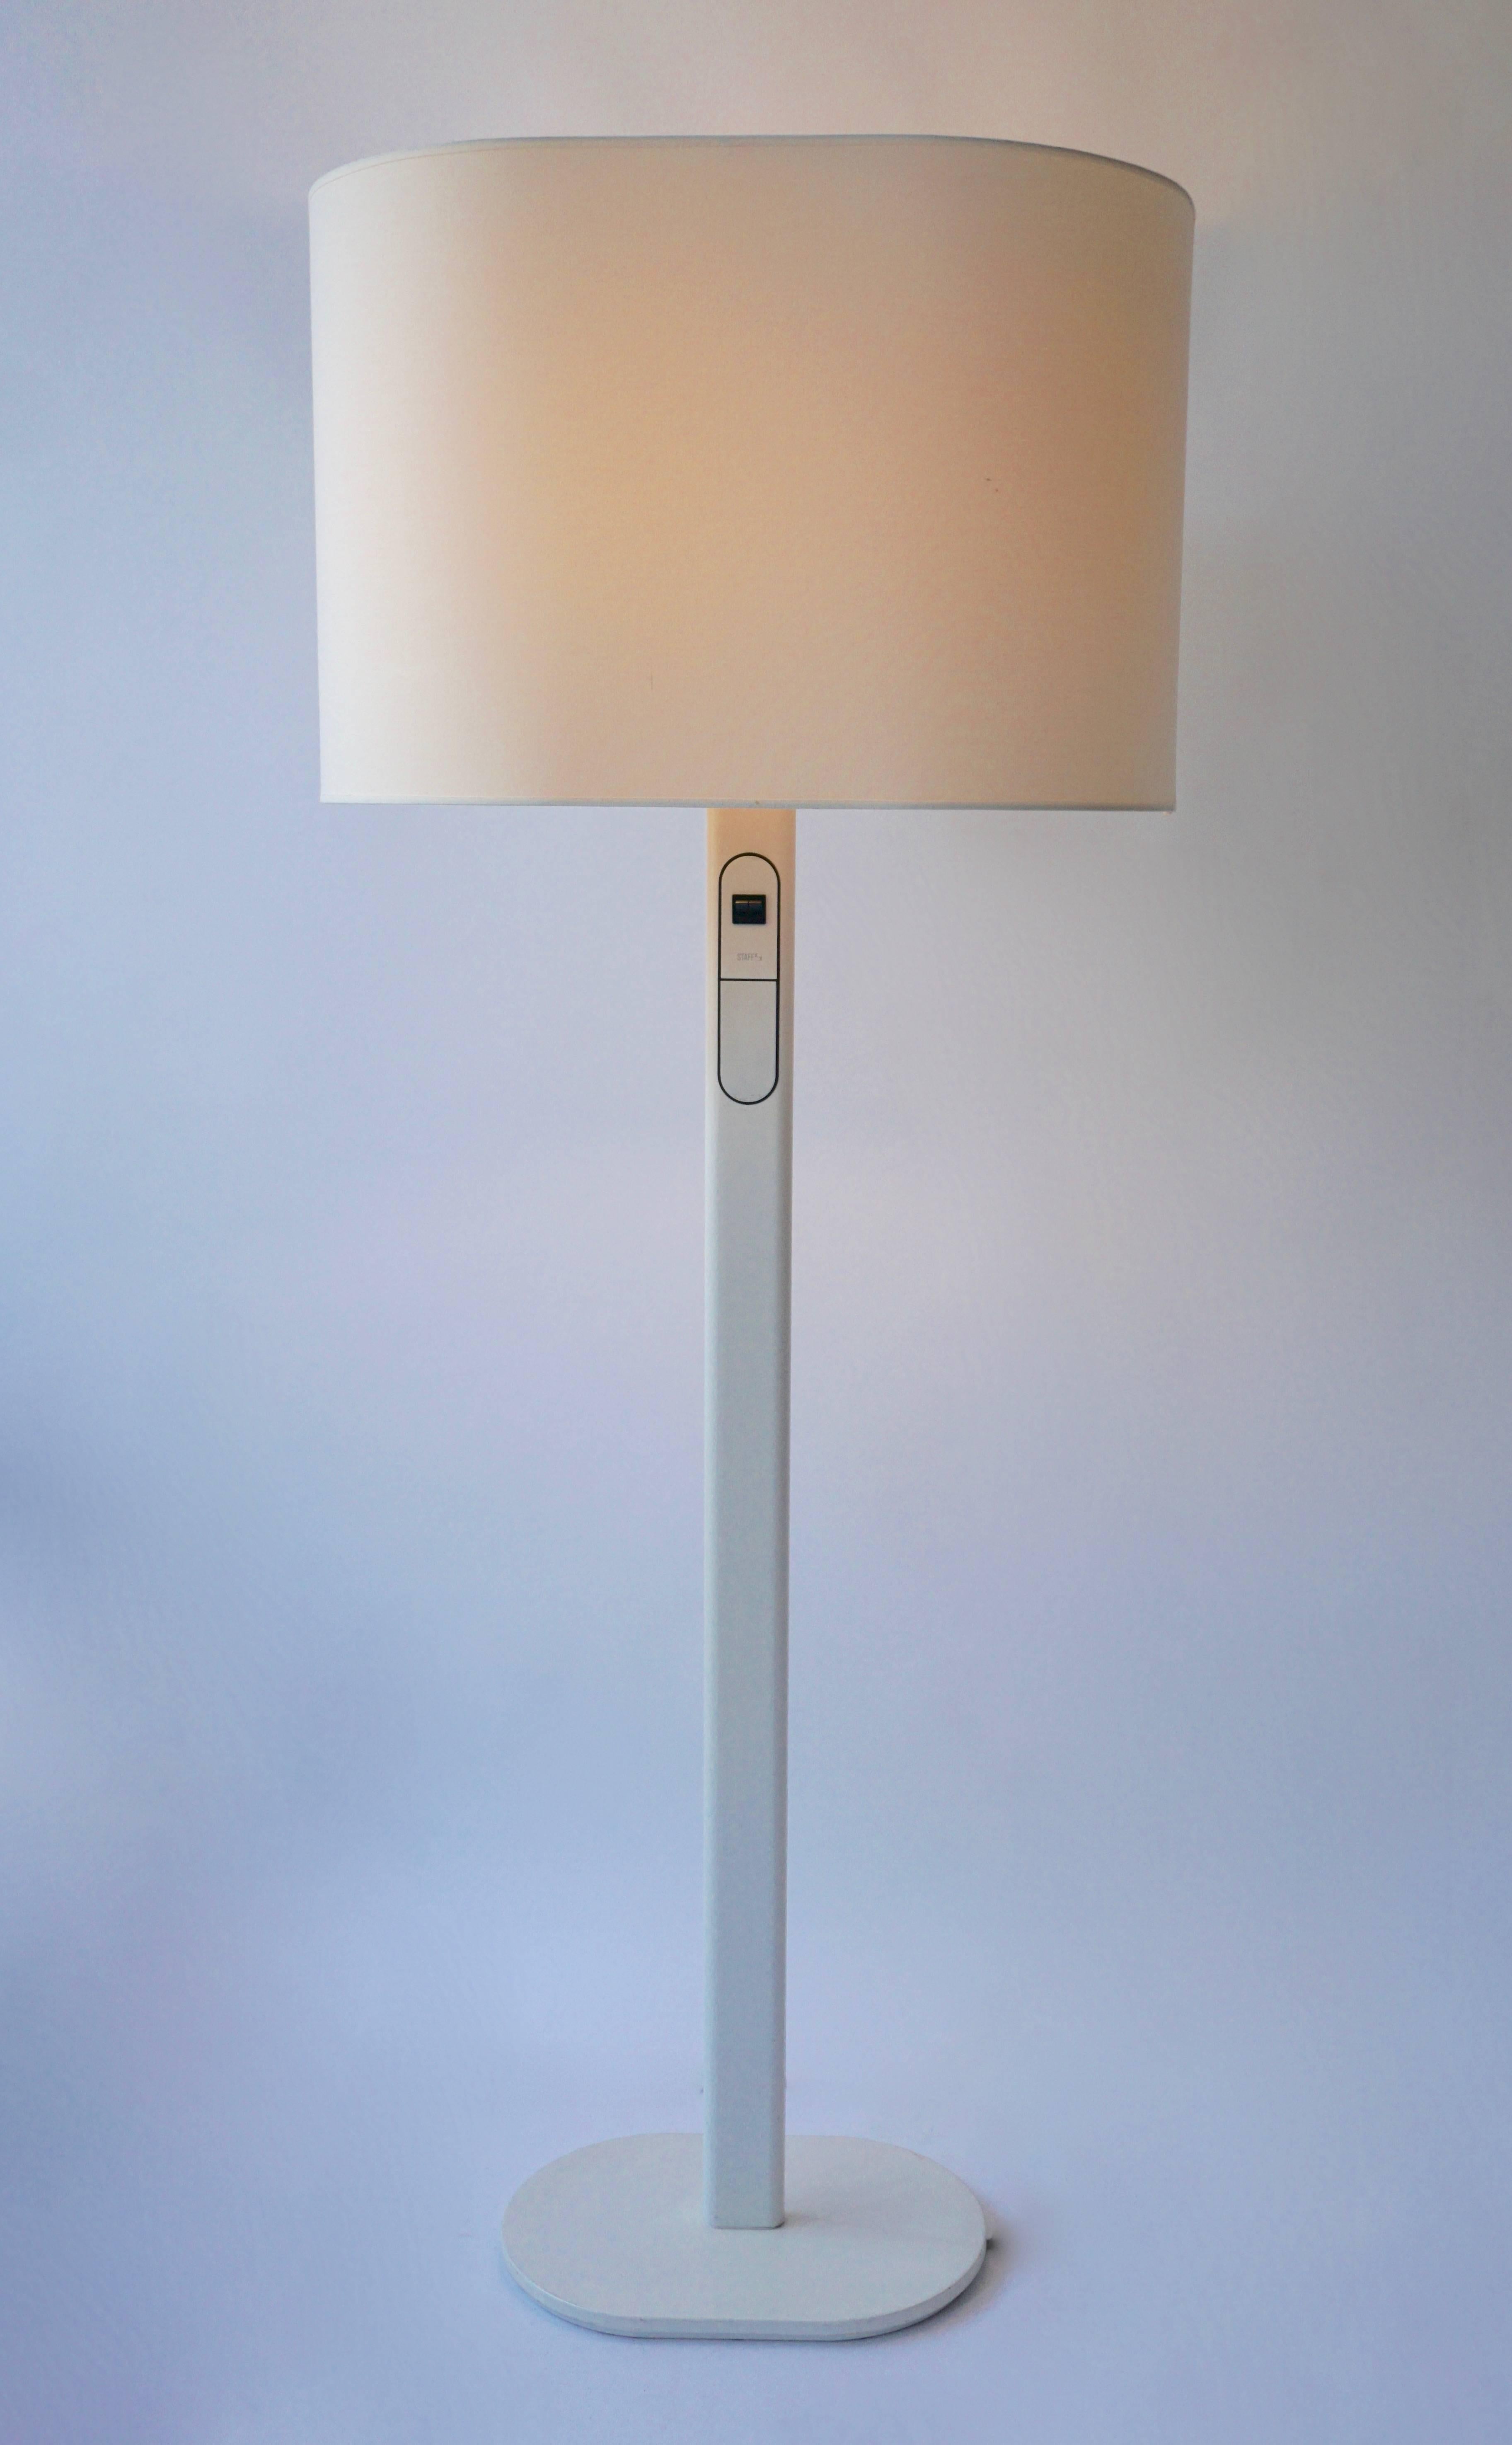 Rare lampadaire de Staff, Allemagne.
Le gradateur est intégré à la lampe et la lampe supérieure peut être gradée séparément.
Une forme fonctionnelle peu commune dans un bel état vintage.
Mesures : Hauteur 152 cm.

Lampadaire staff des années